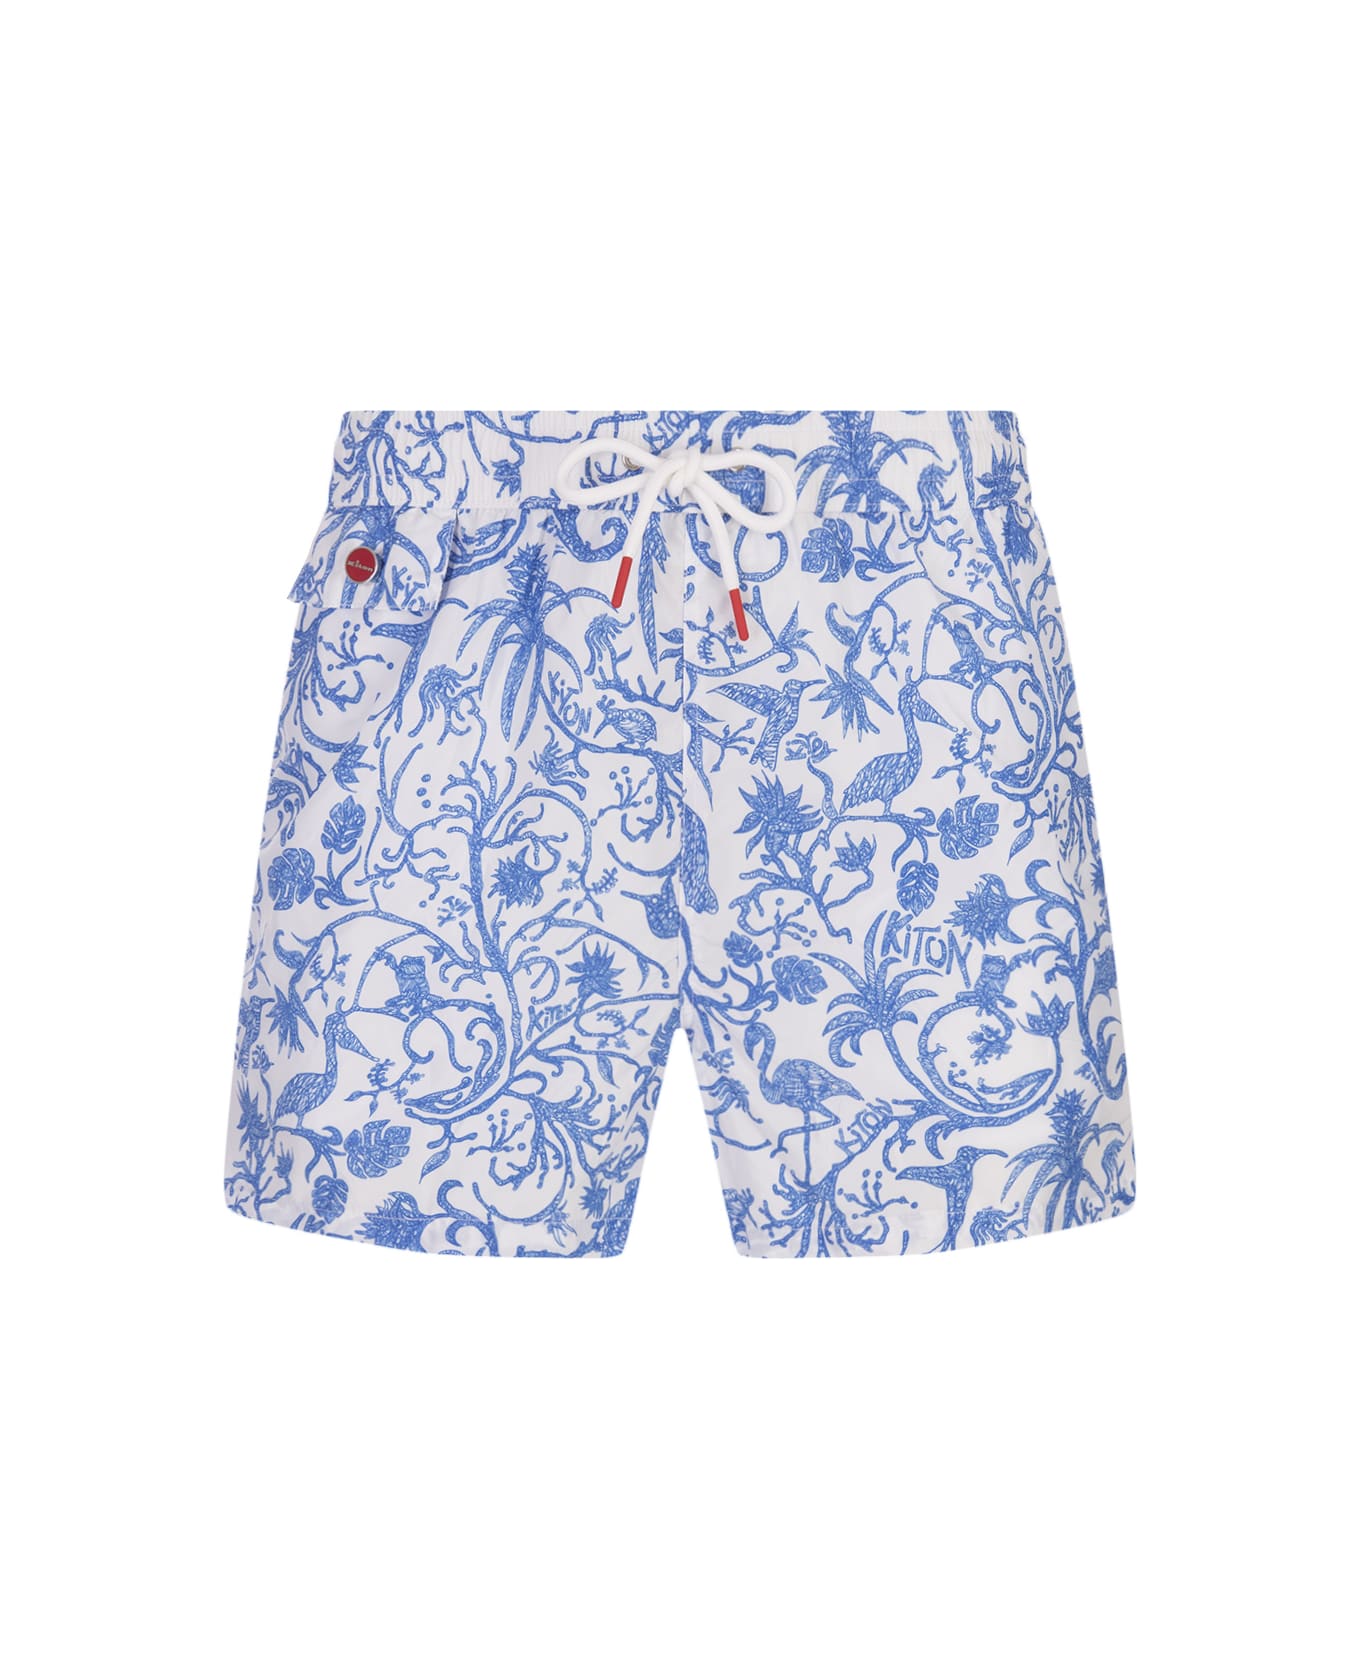 Kiton White Swim Shorts With Blue Fantasy Print - White